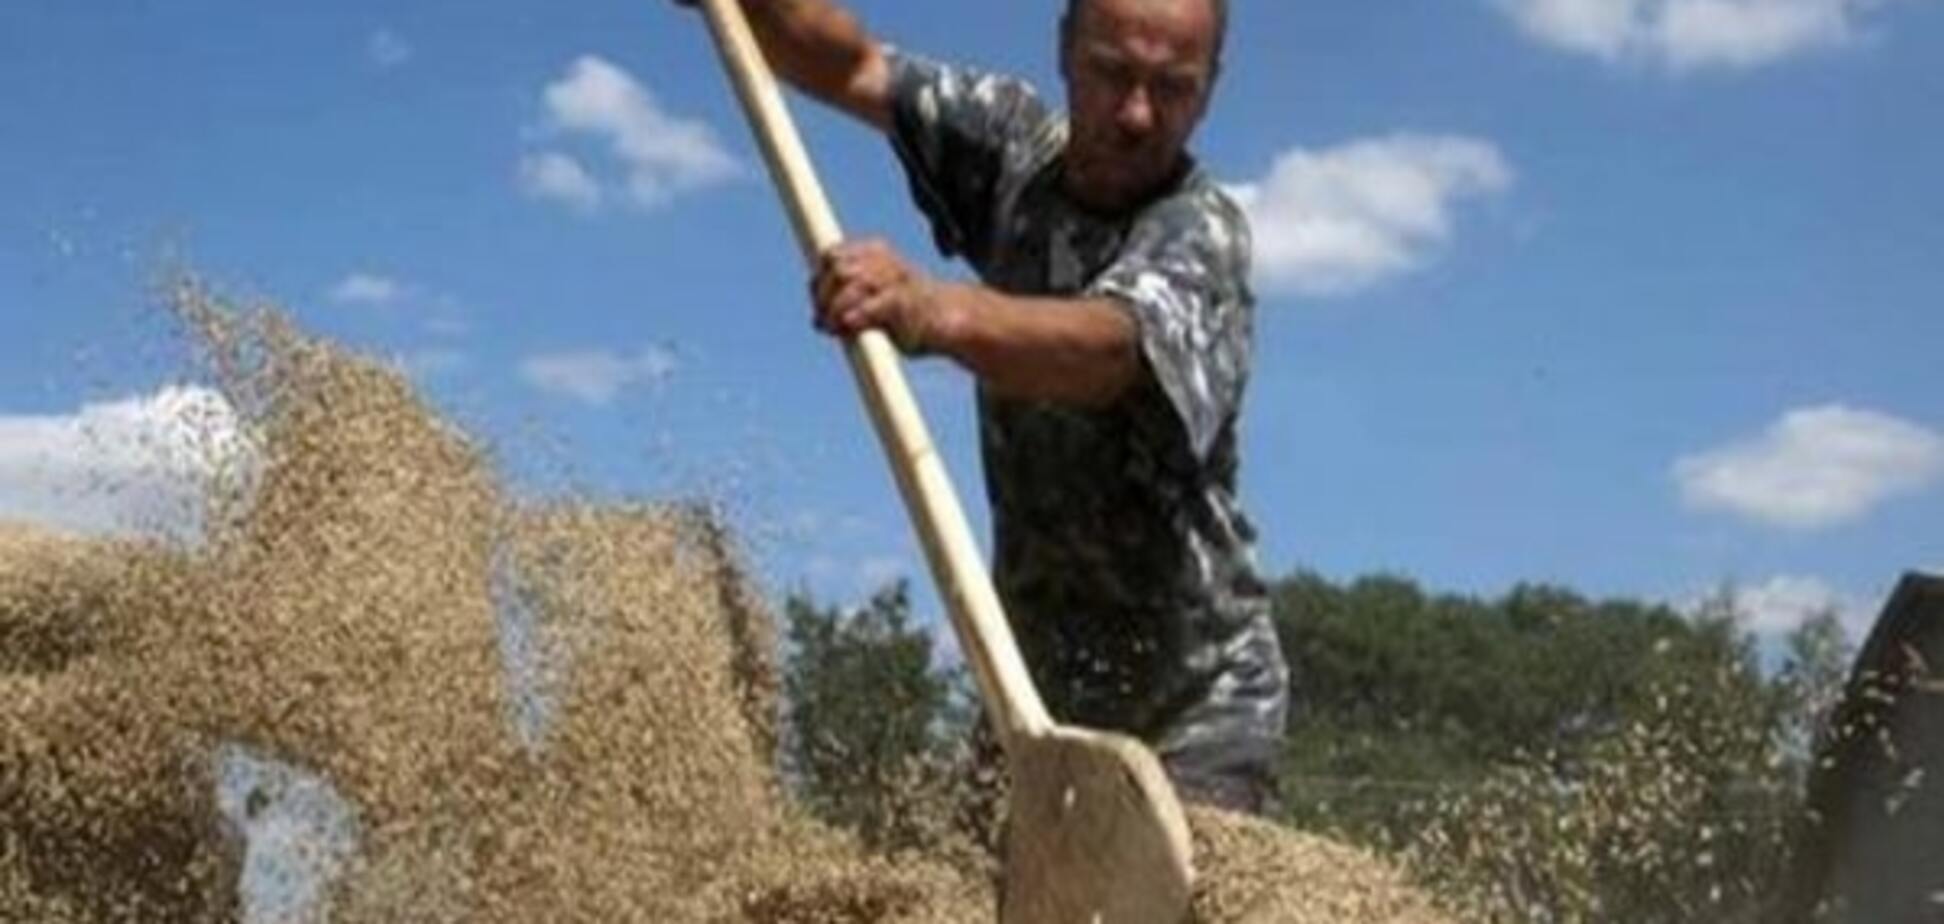 Павленко: Німецькі експерти консультуватимуть українських аграріїв щодо виходу на ринки ЄС